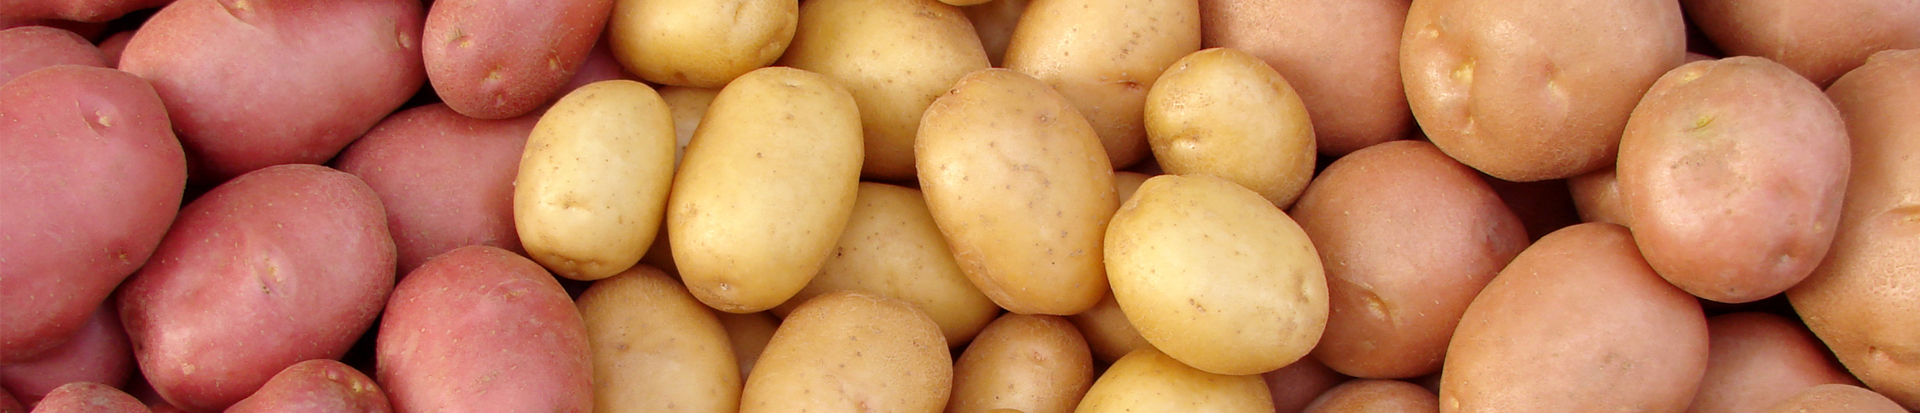 Сорт картофеля палац. Сорт картофеля Эдисон. Семенная картошка. Картошка отборная.